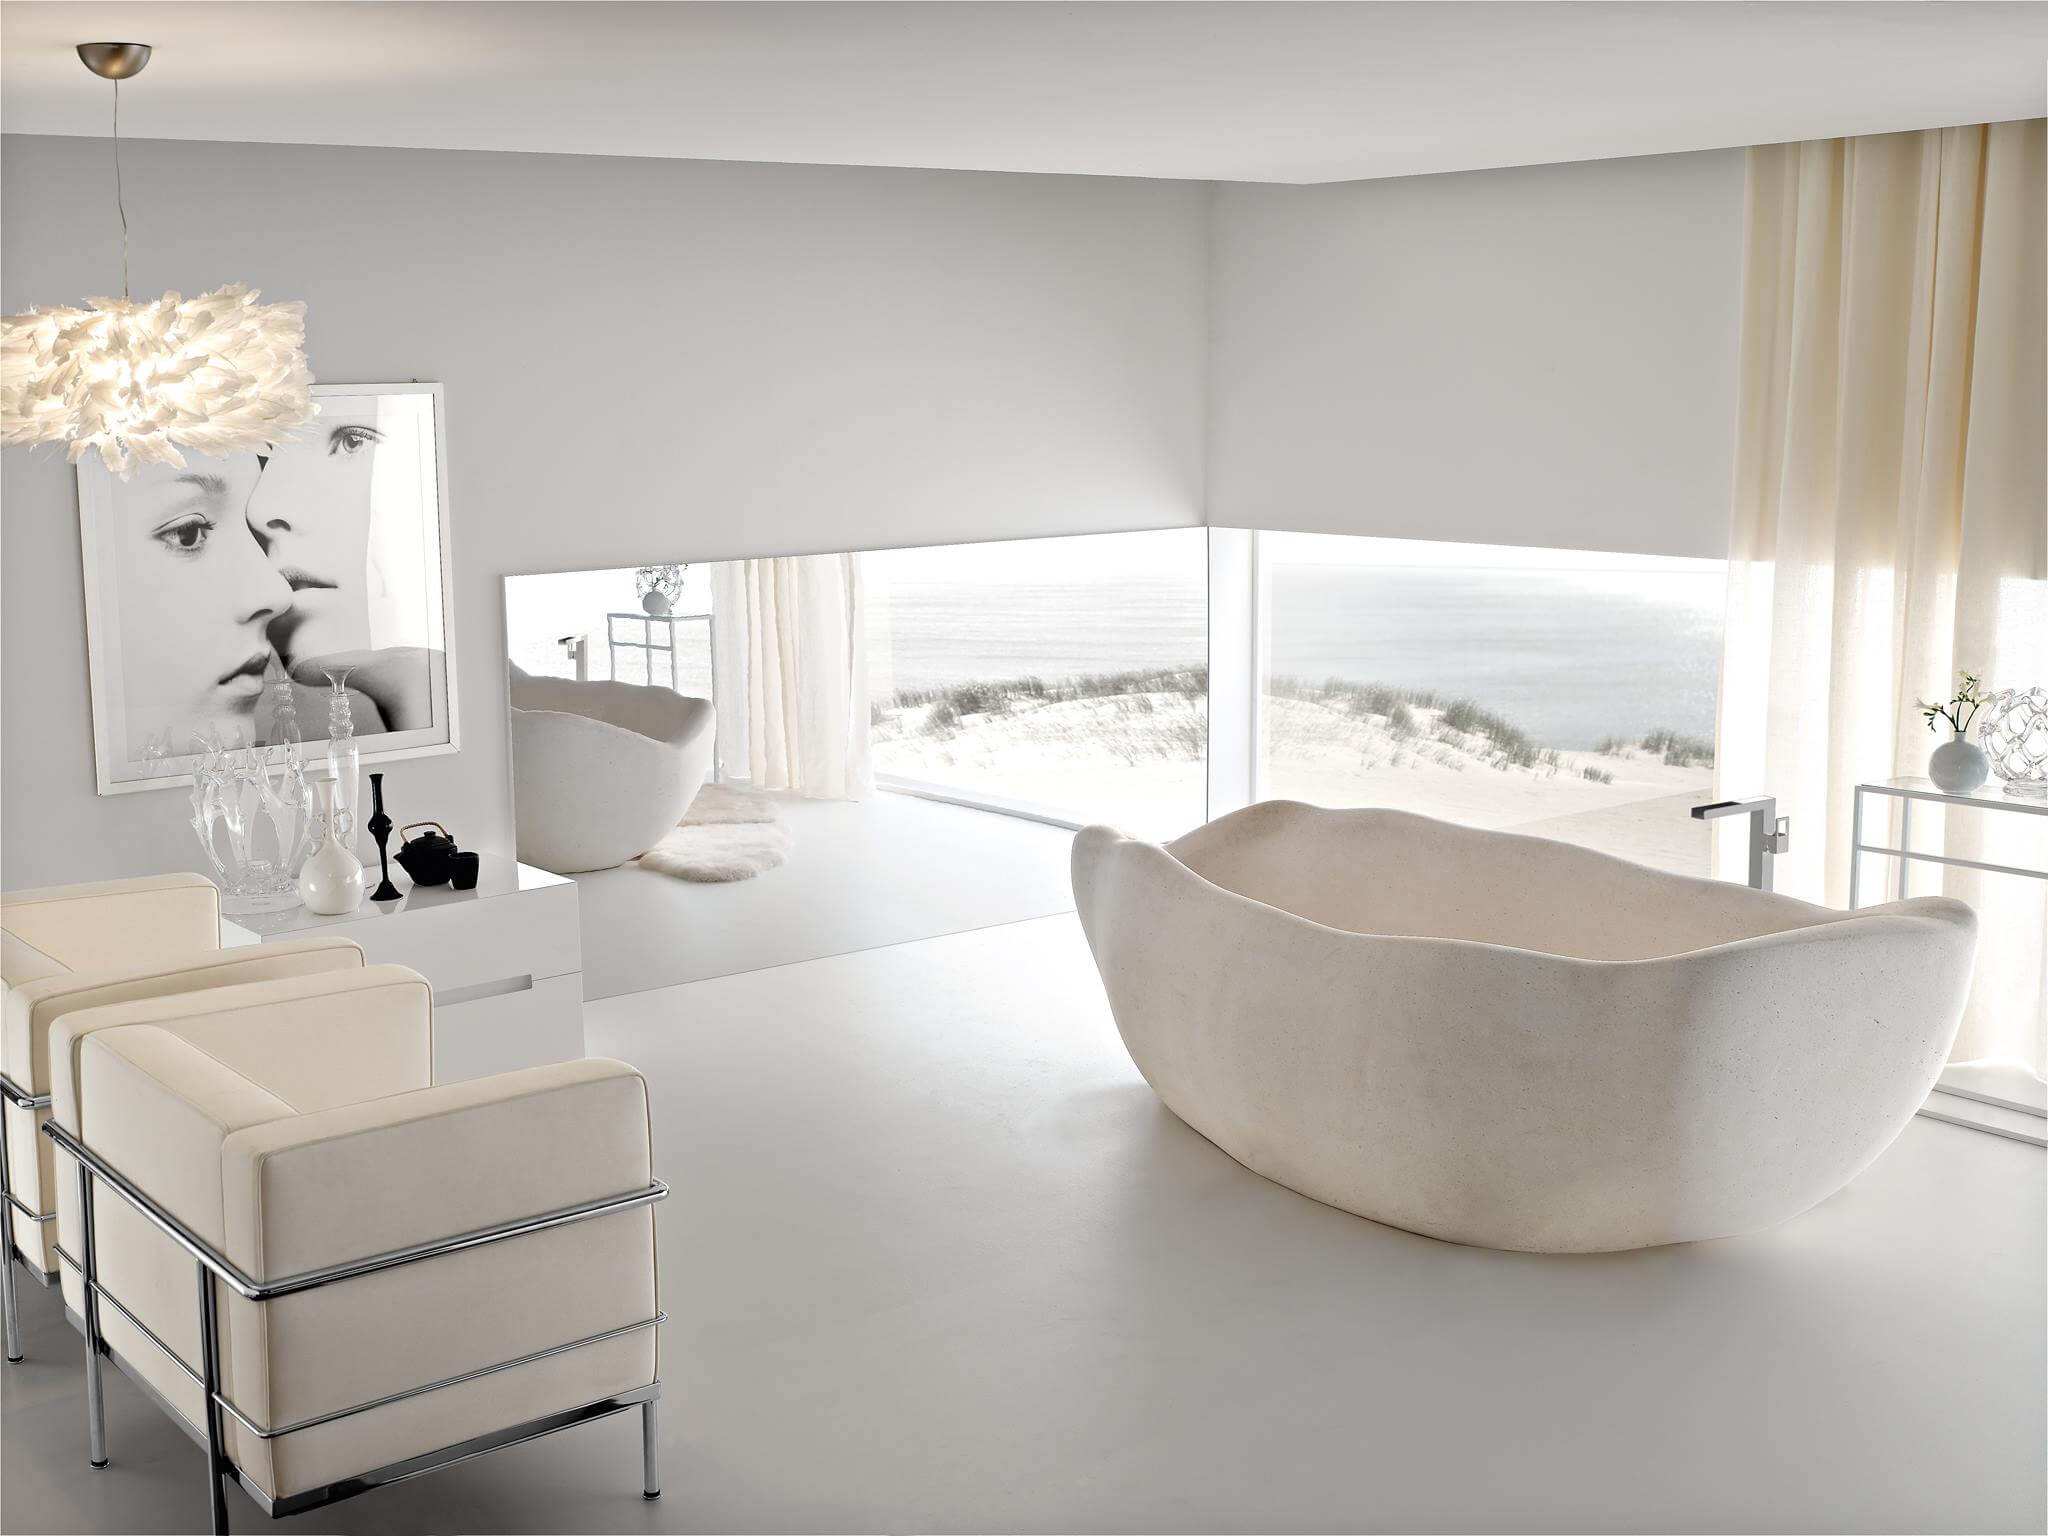 Helles Badezimmer mit Natursteinwanne und modernen Sitzgelegenheiten